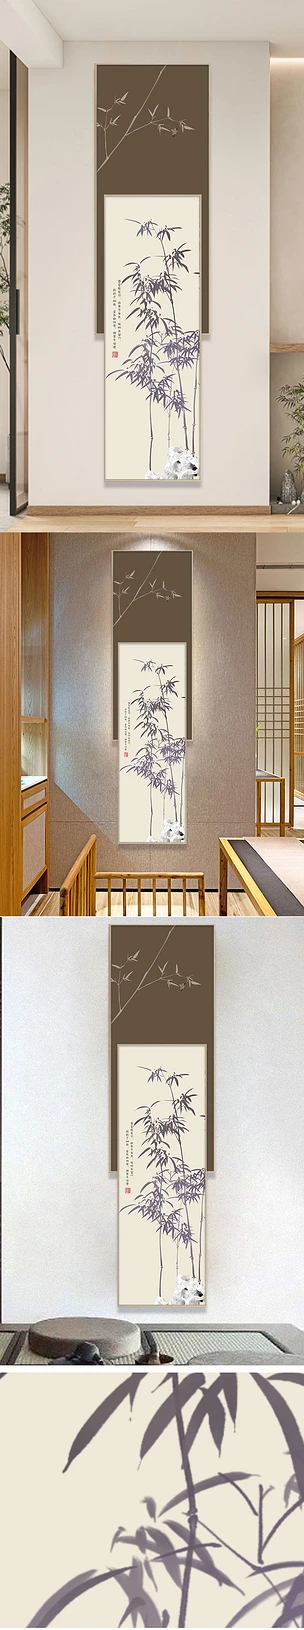 竹报平安玄关画装饰画新中式竹子挂画禅意壁画竖